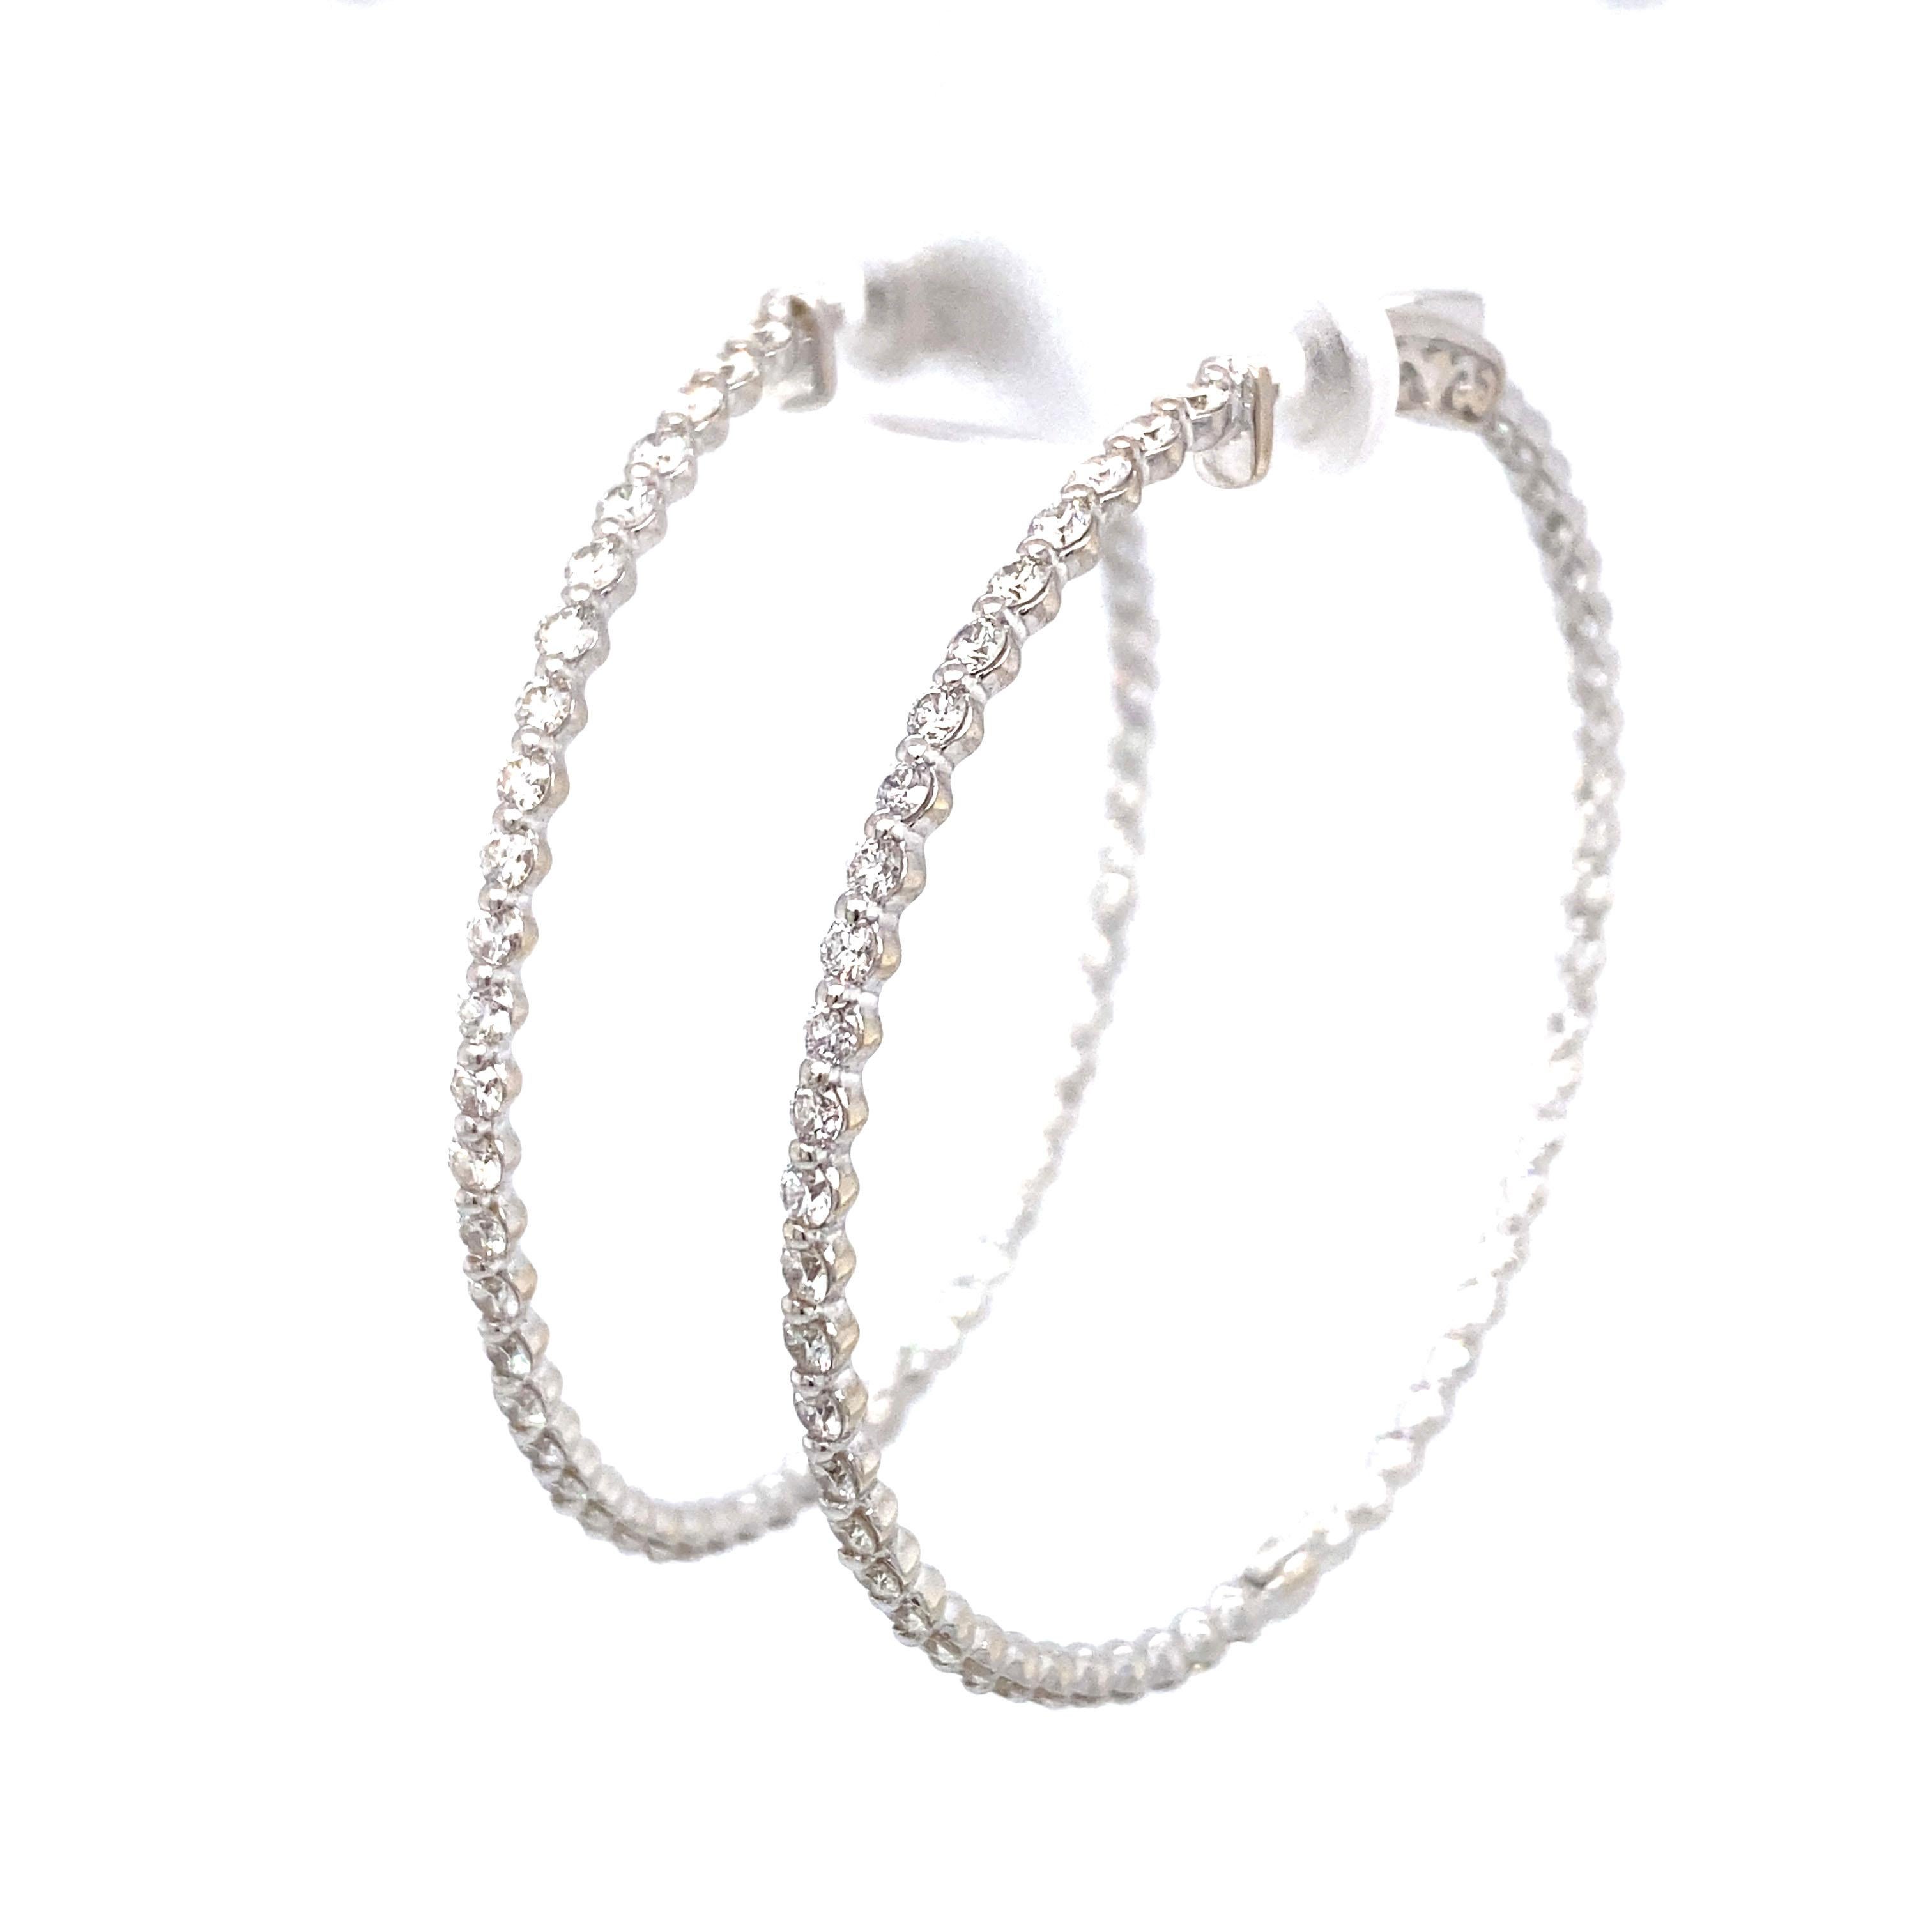 2.60 Carat Inside Out Diamond Hoop Earrings in 18 Karat White Gold For Sale 2